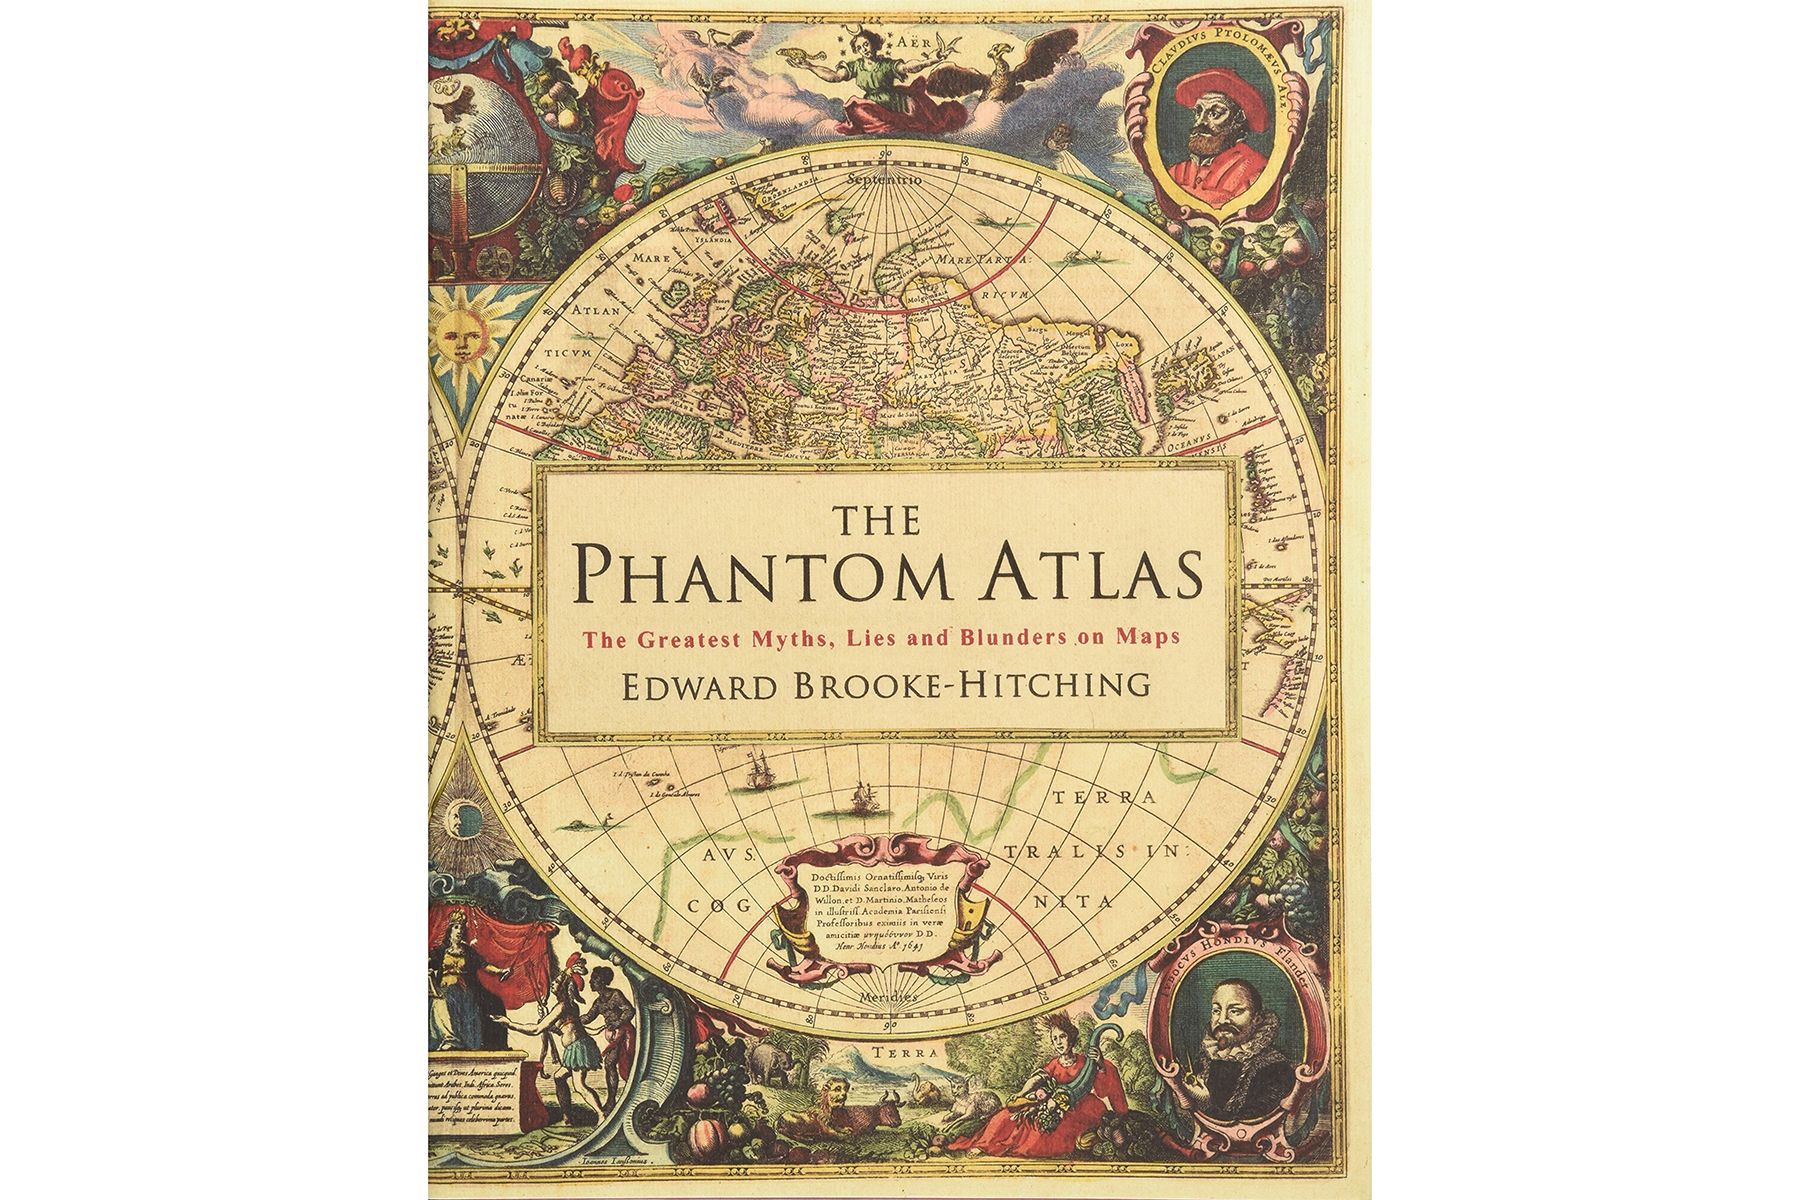 Couverture de The Phantom Atlas, par Edward Brooke-Hitching